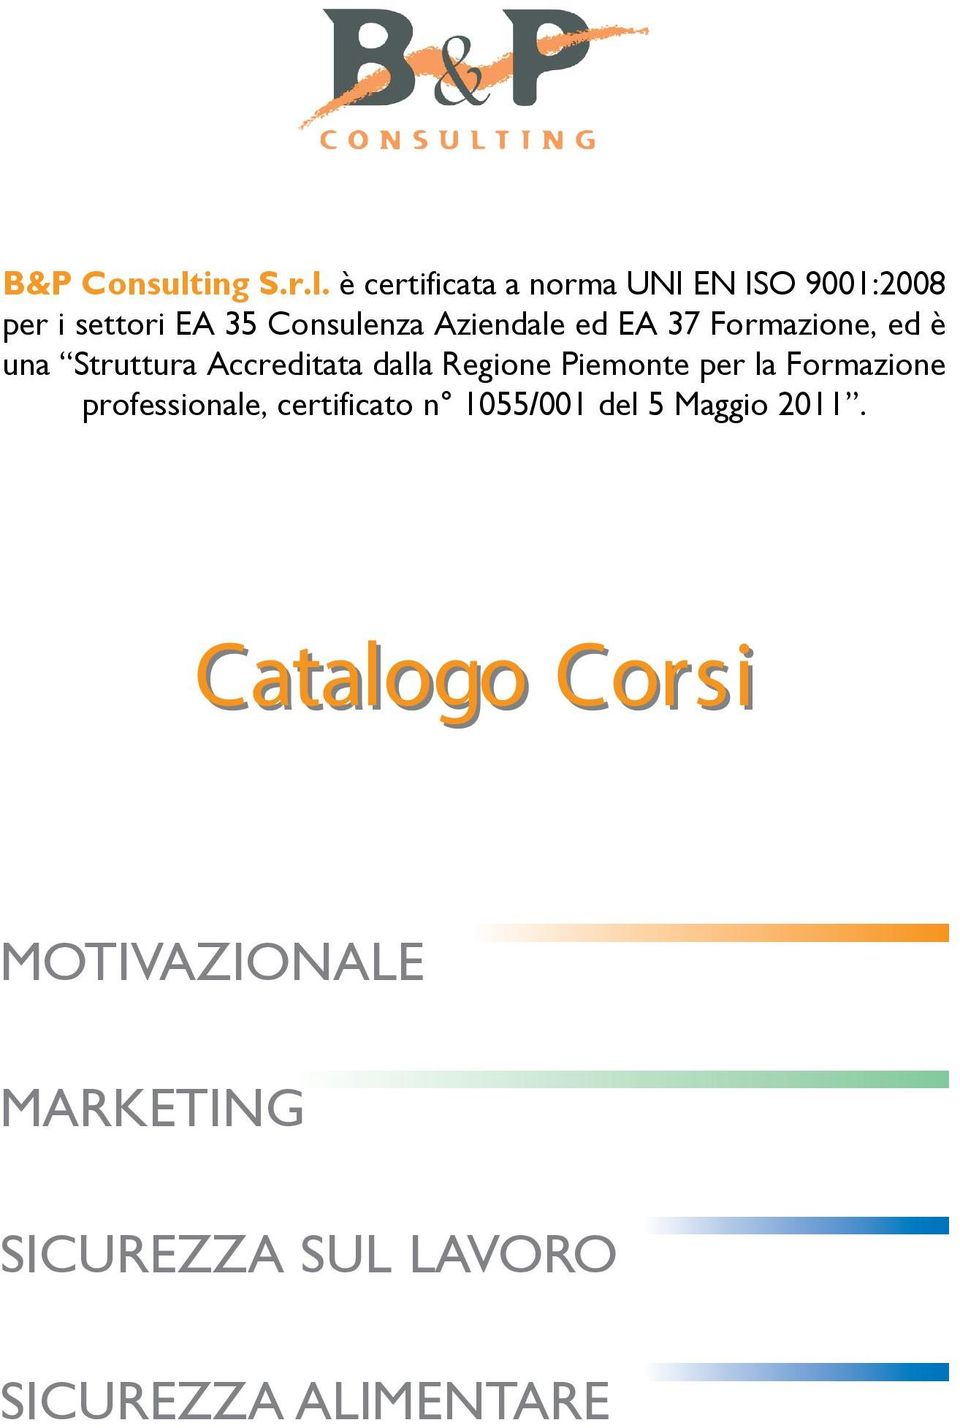 Piemonte per la Formazione professionale, certificato n 1055/001 del 5 Maggio